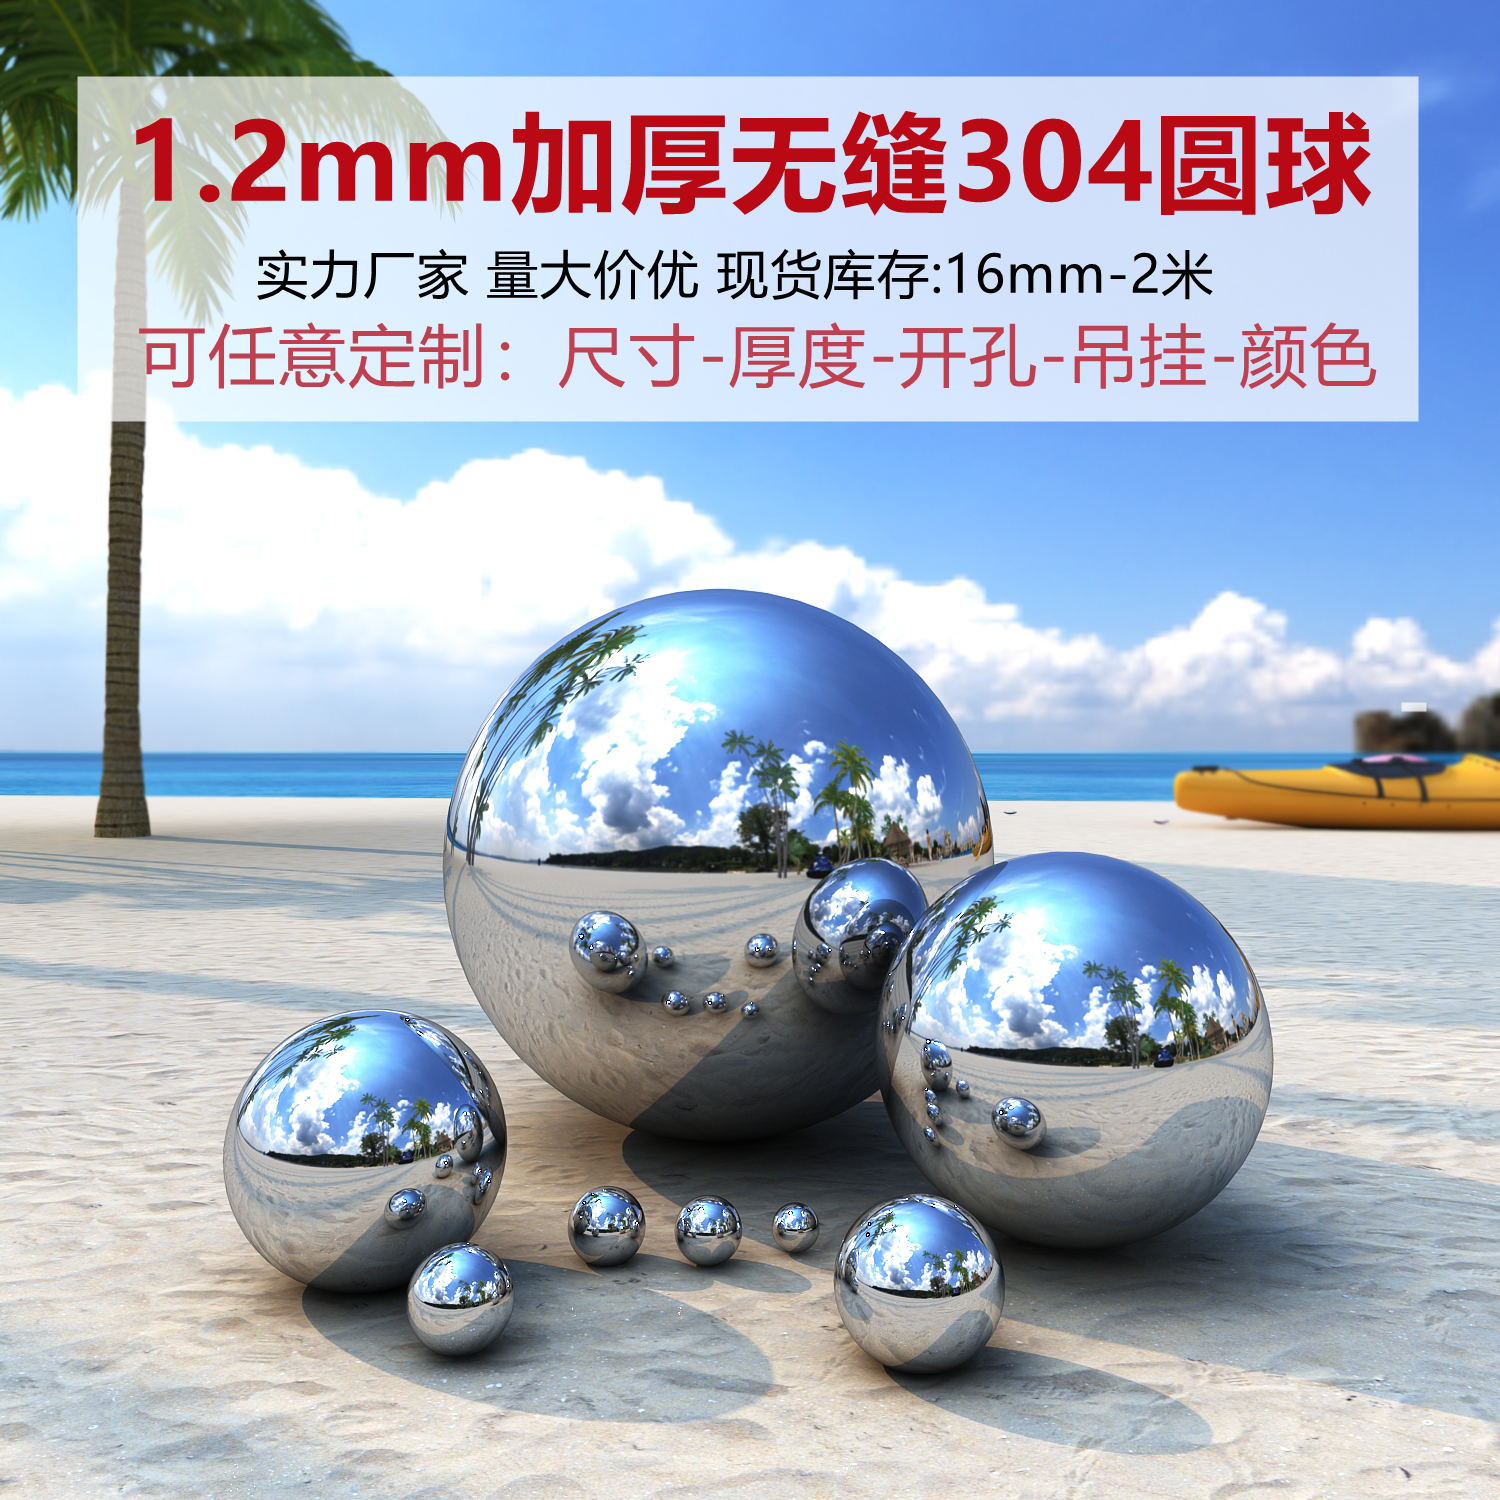 1.2mm加厚304不锈钢圆球白钢球装饰球金属球浮球景观雕塑空心圆球